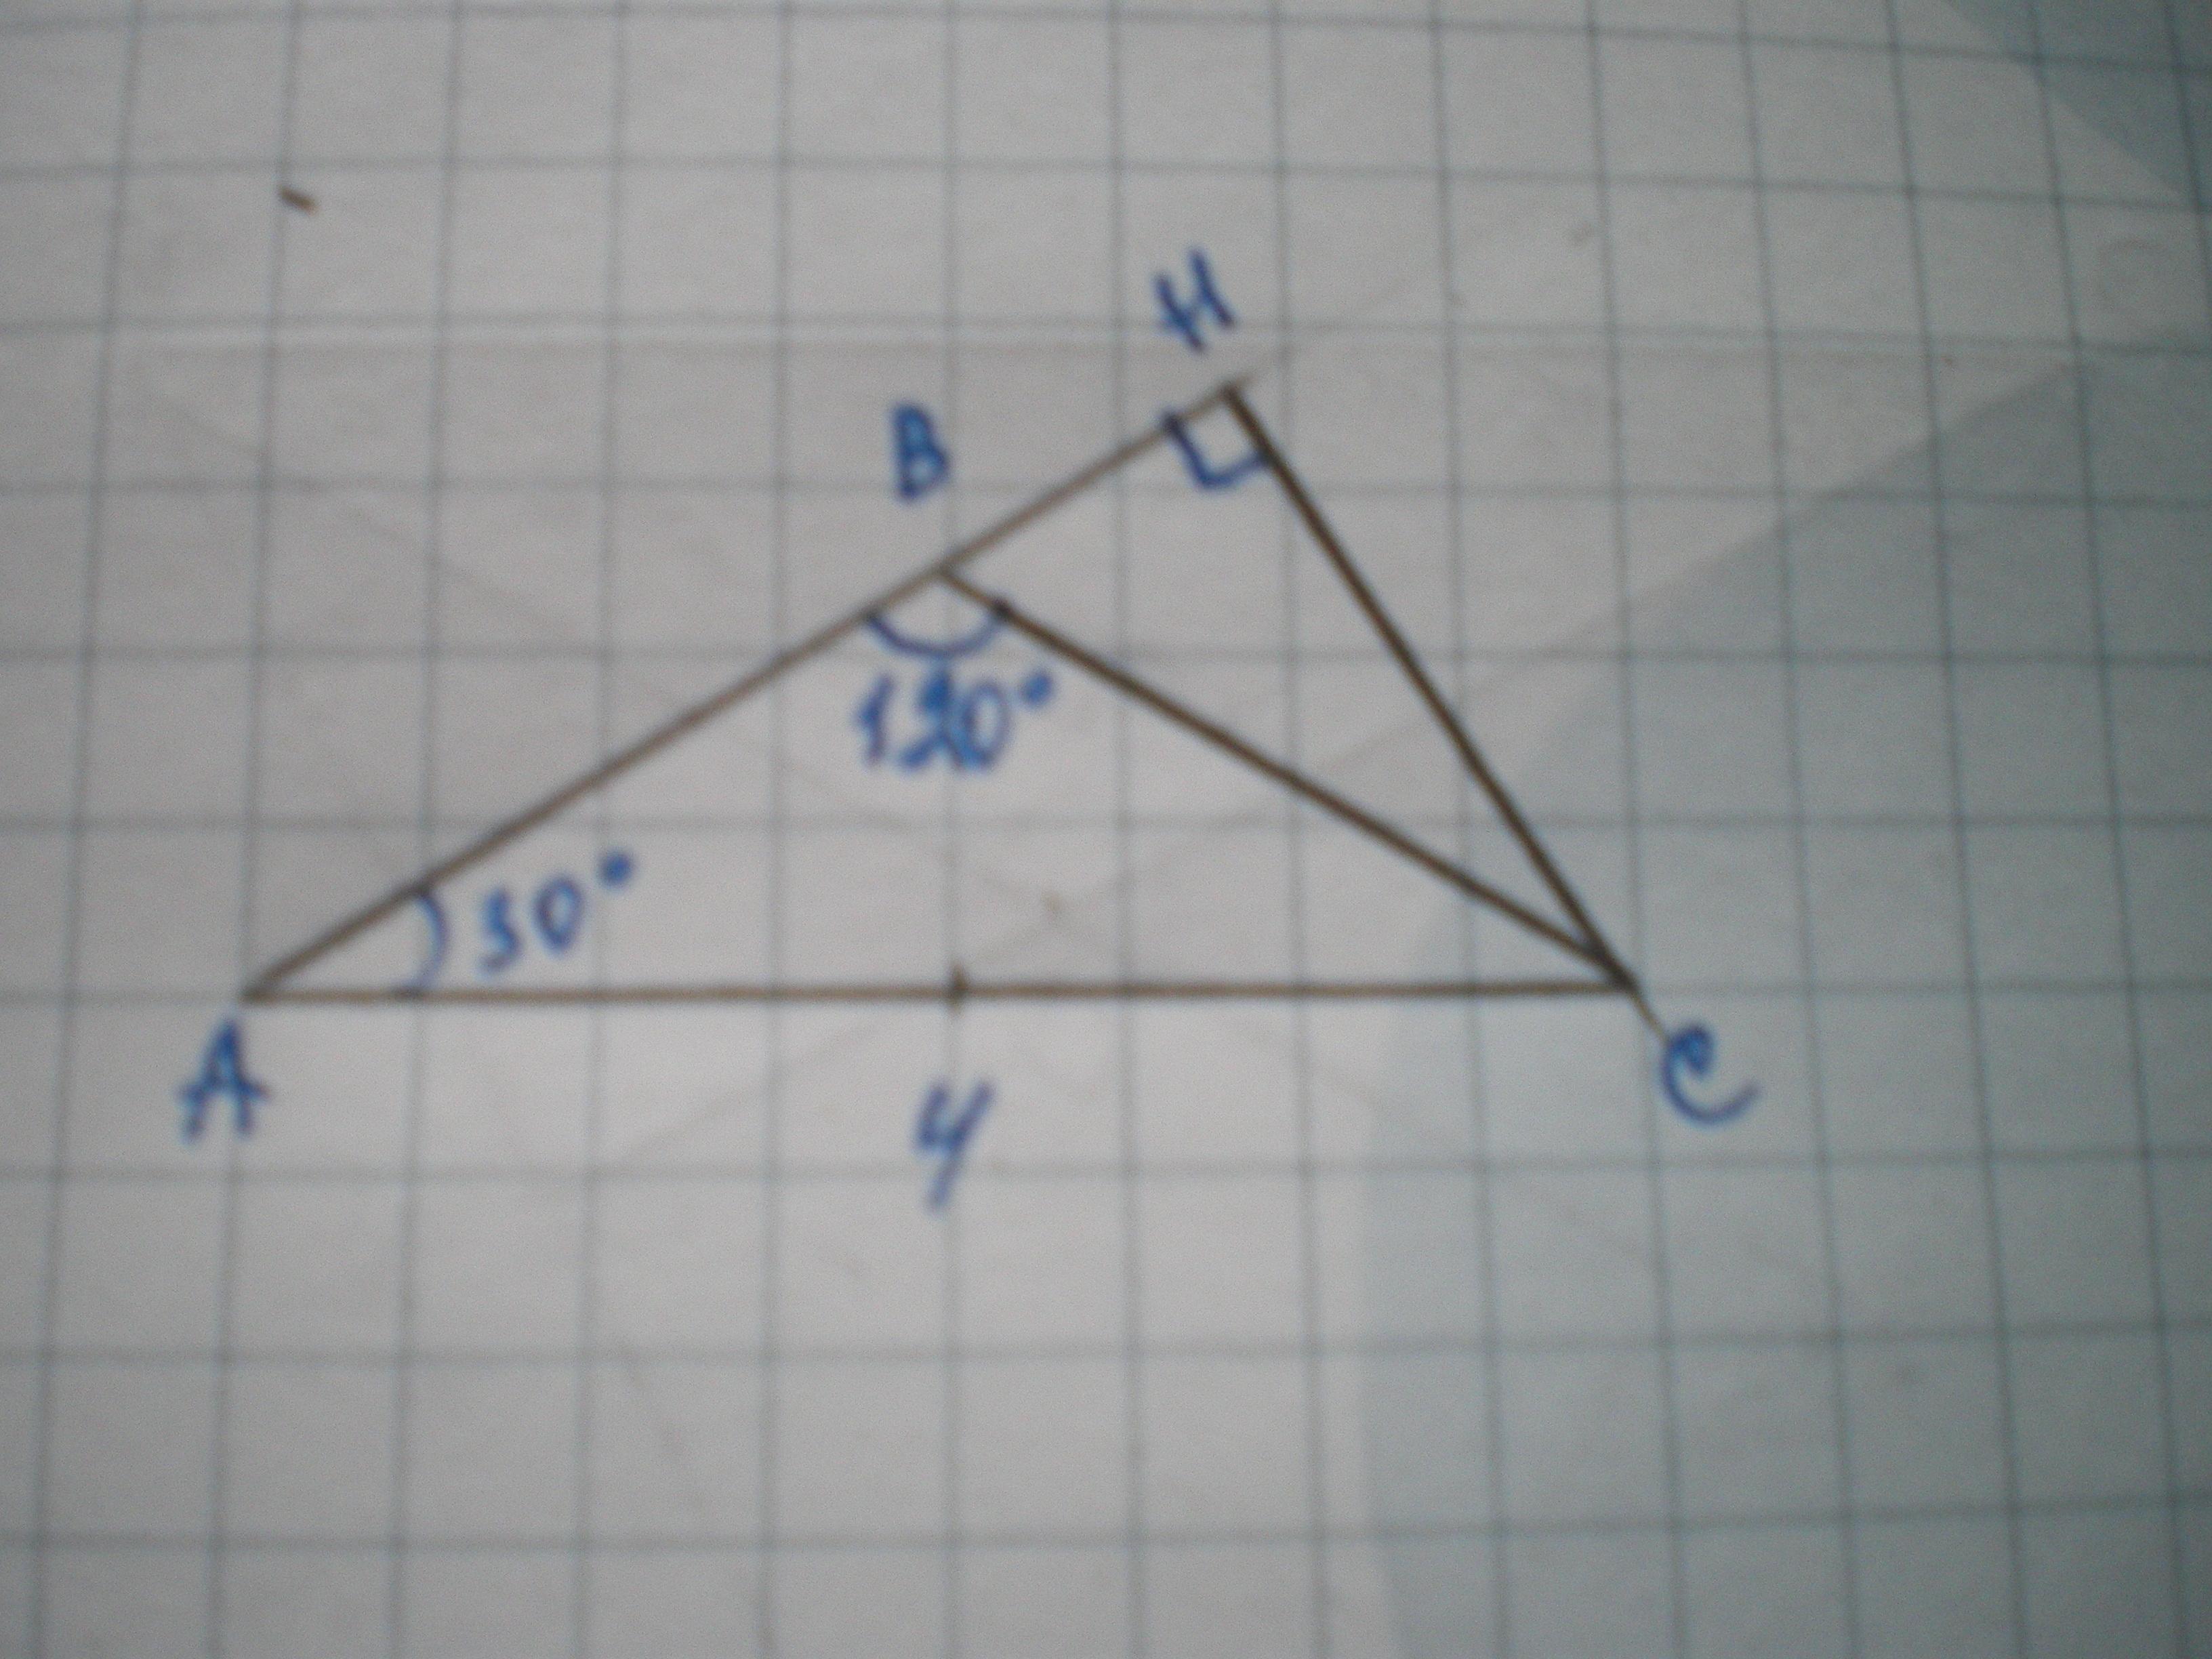 Равнобедренный тупоугольный треугольник авс. Угол АВС равен 120 градусов. Тупоугольный треугольник 120 градусов. Угол в треугольнике равен 120. Равнобедренный треугольник градусы углов.